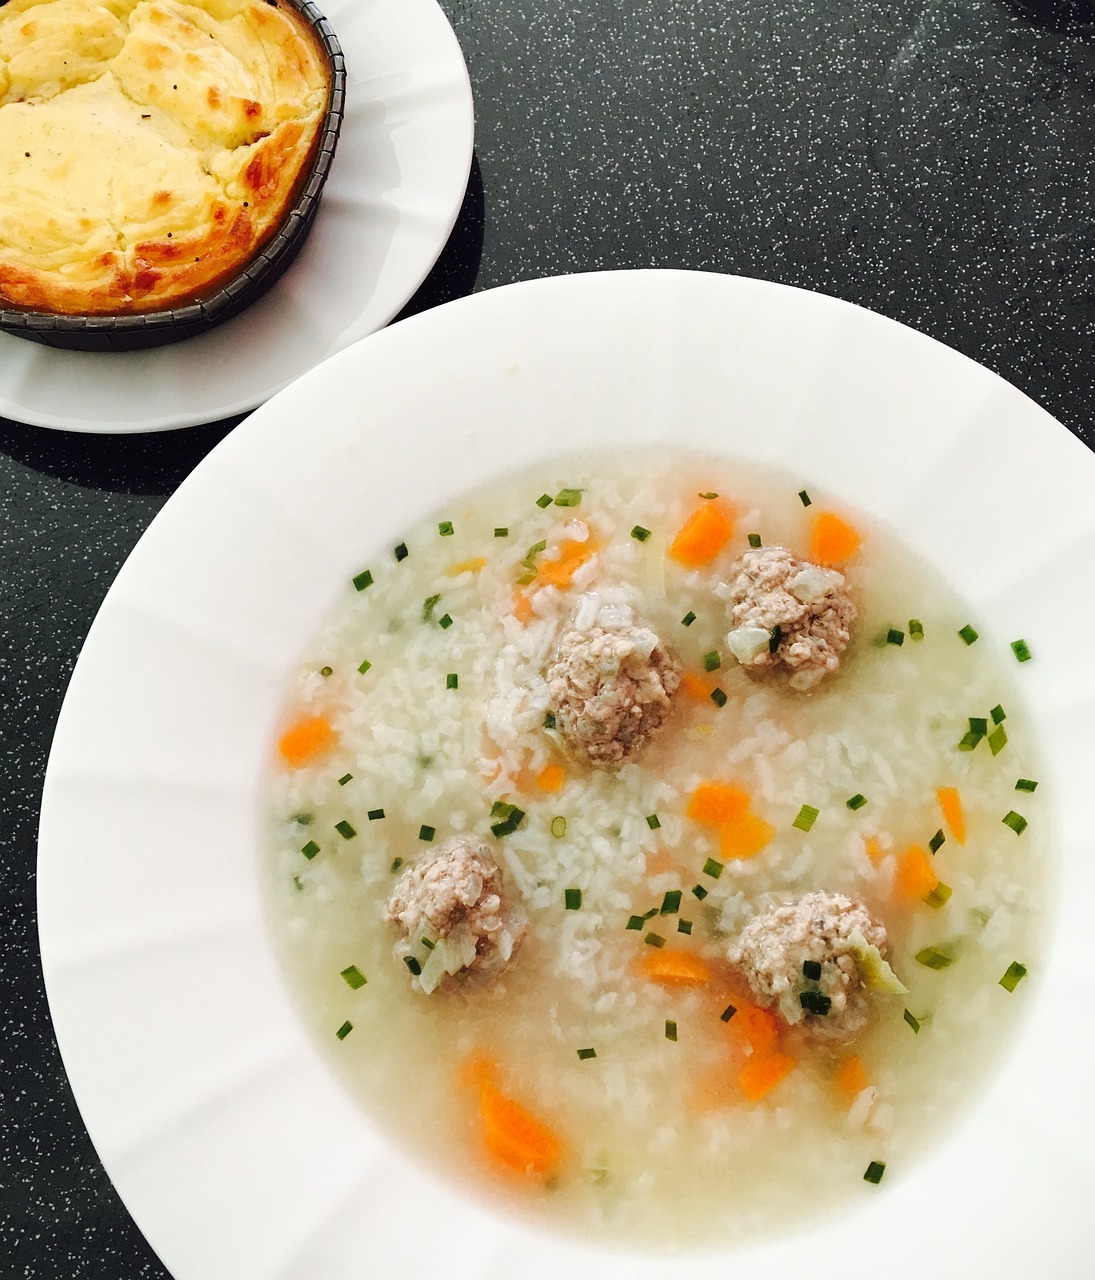 Aetang - Meatball soup